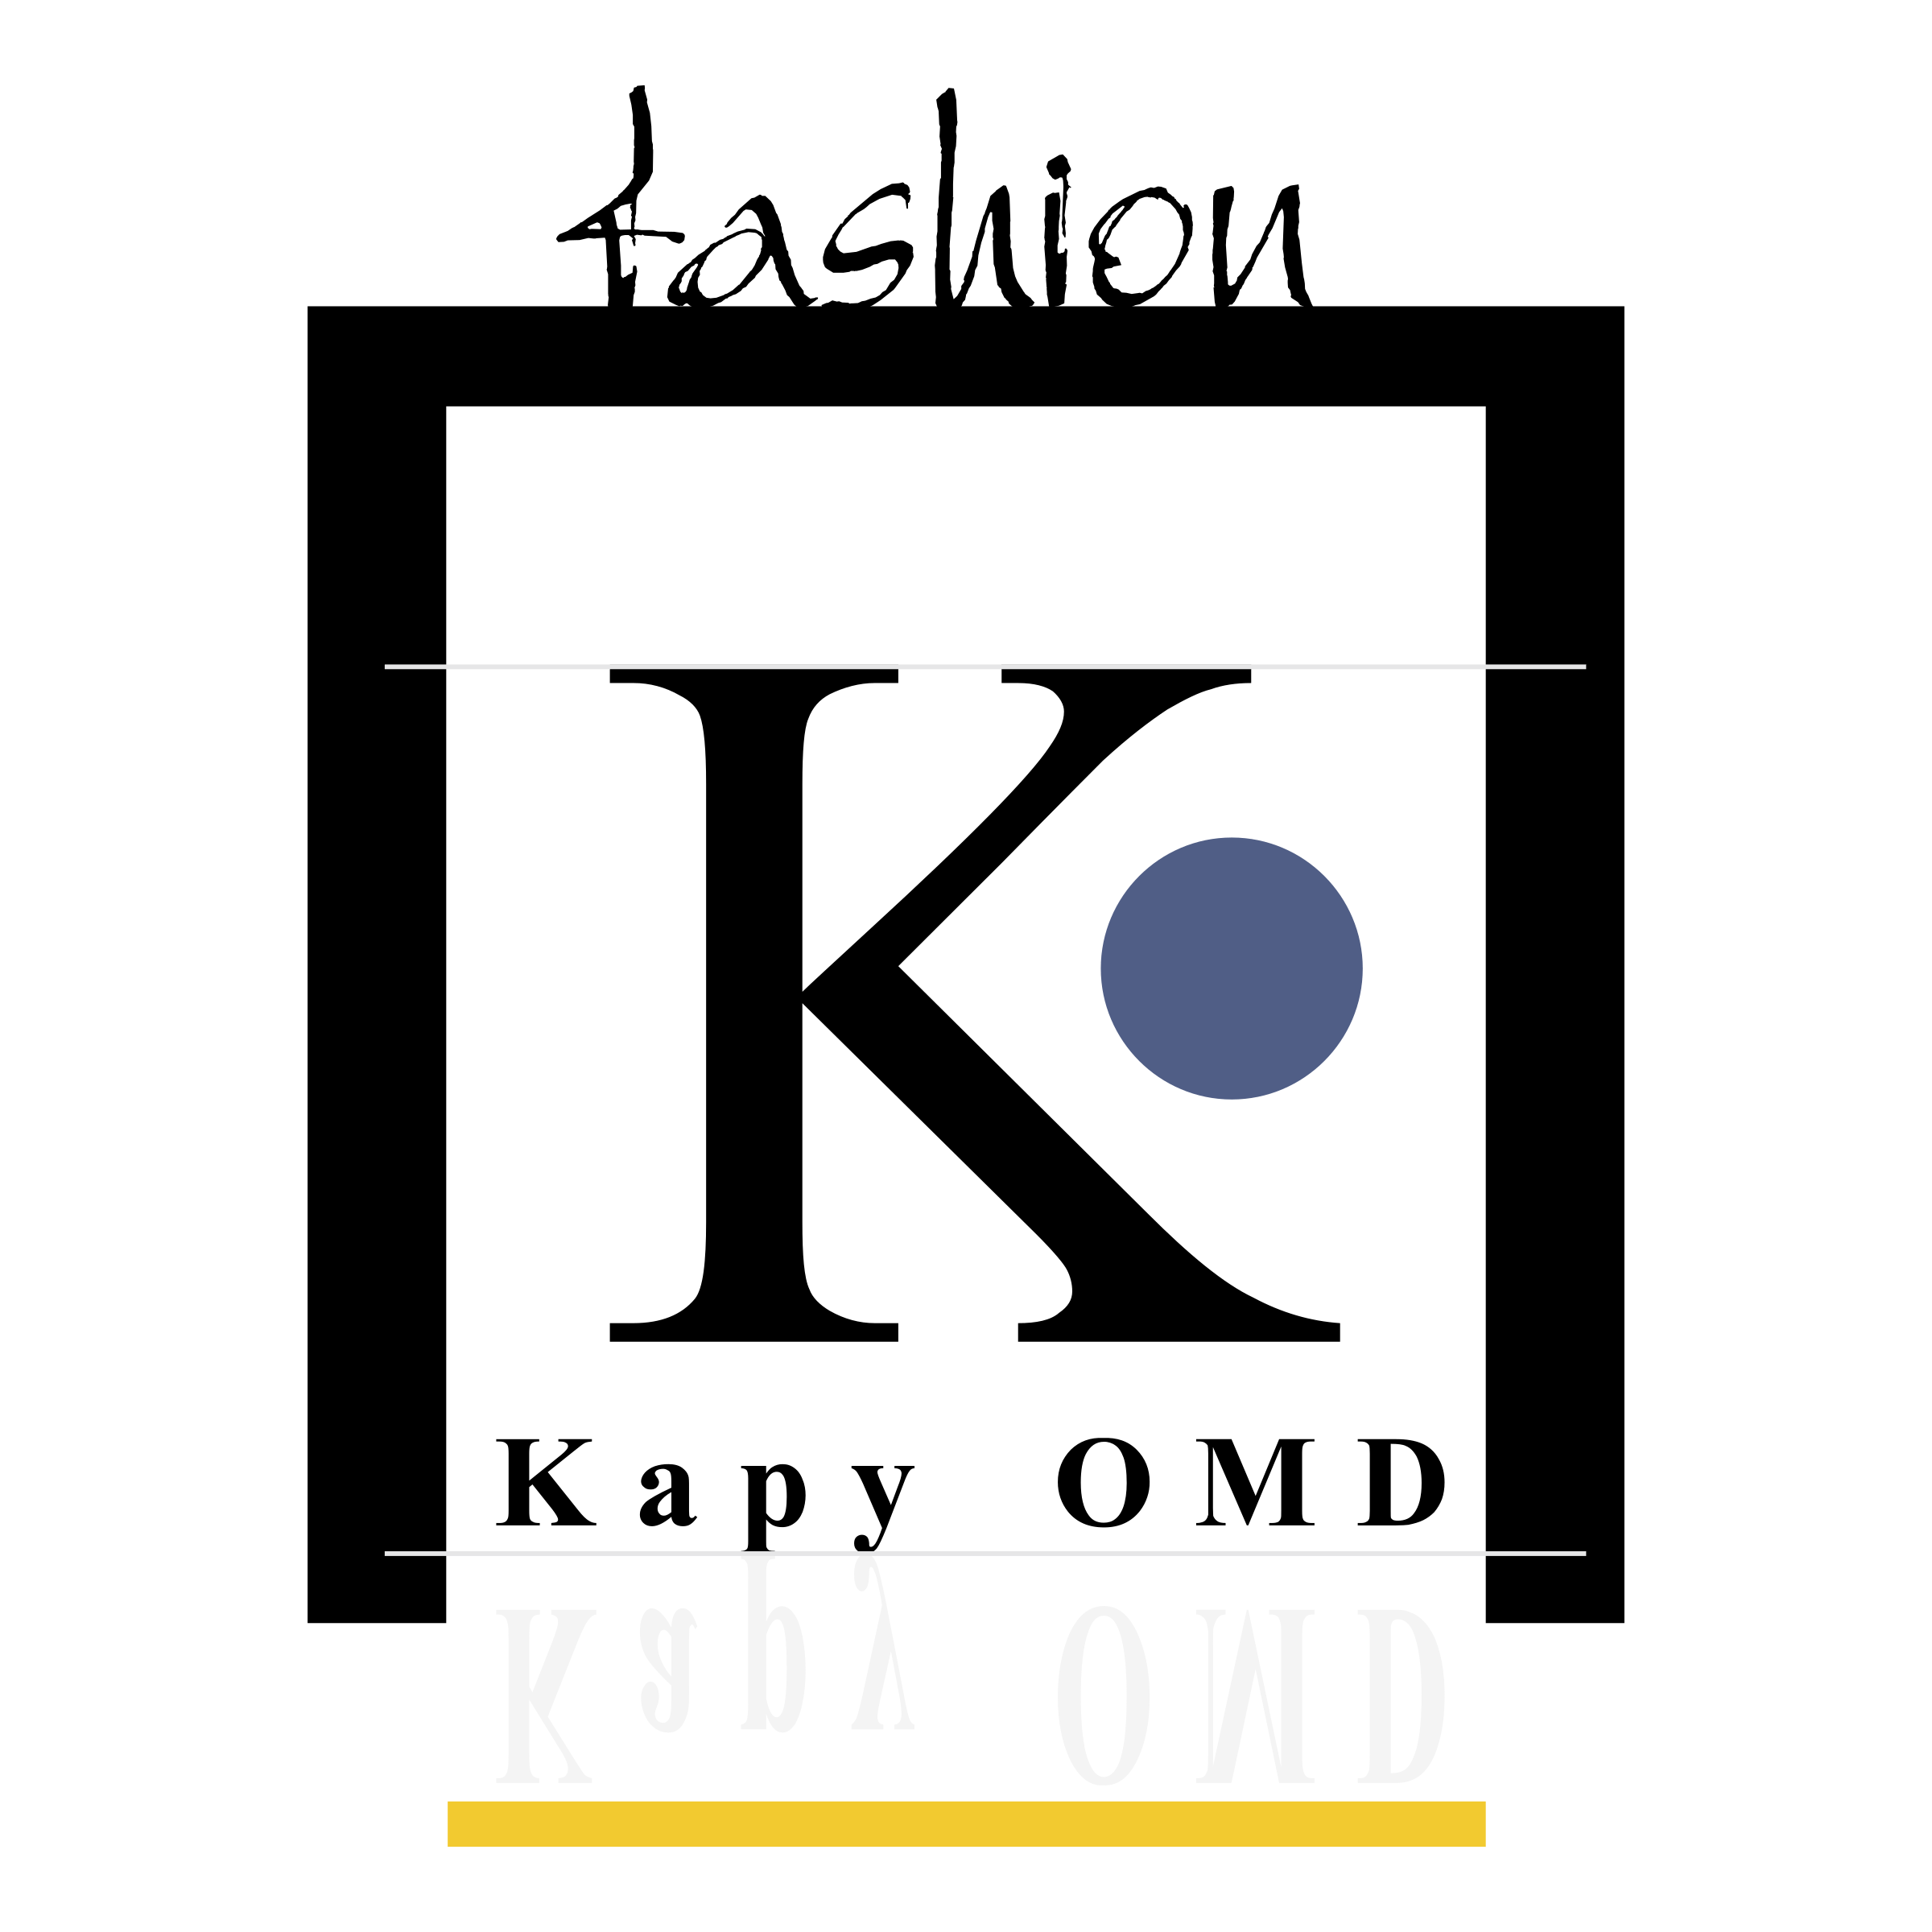 OMD Logo - Kapy OMD Logo PNG Transparent & SVG Vector